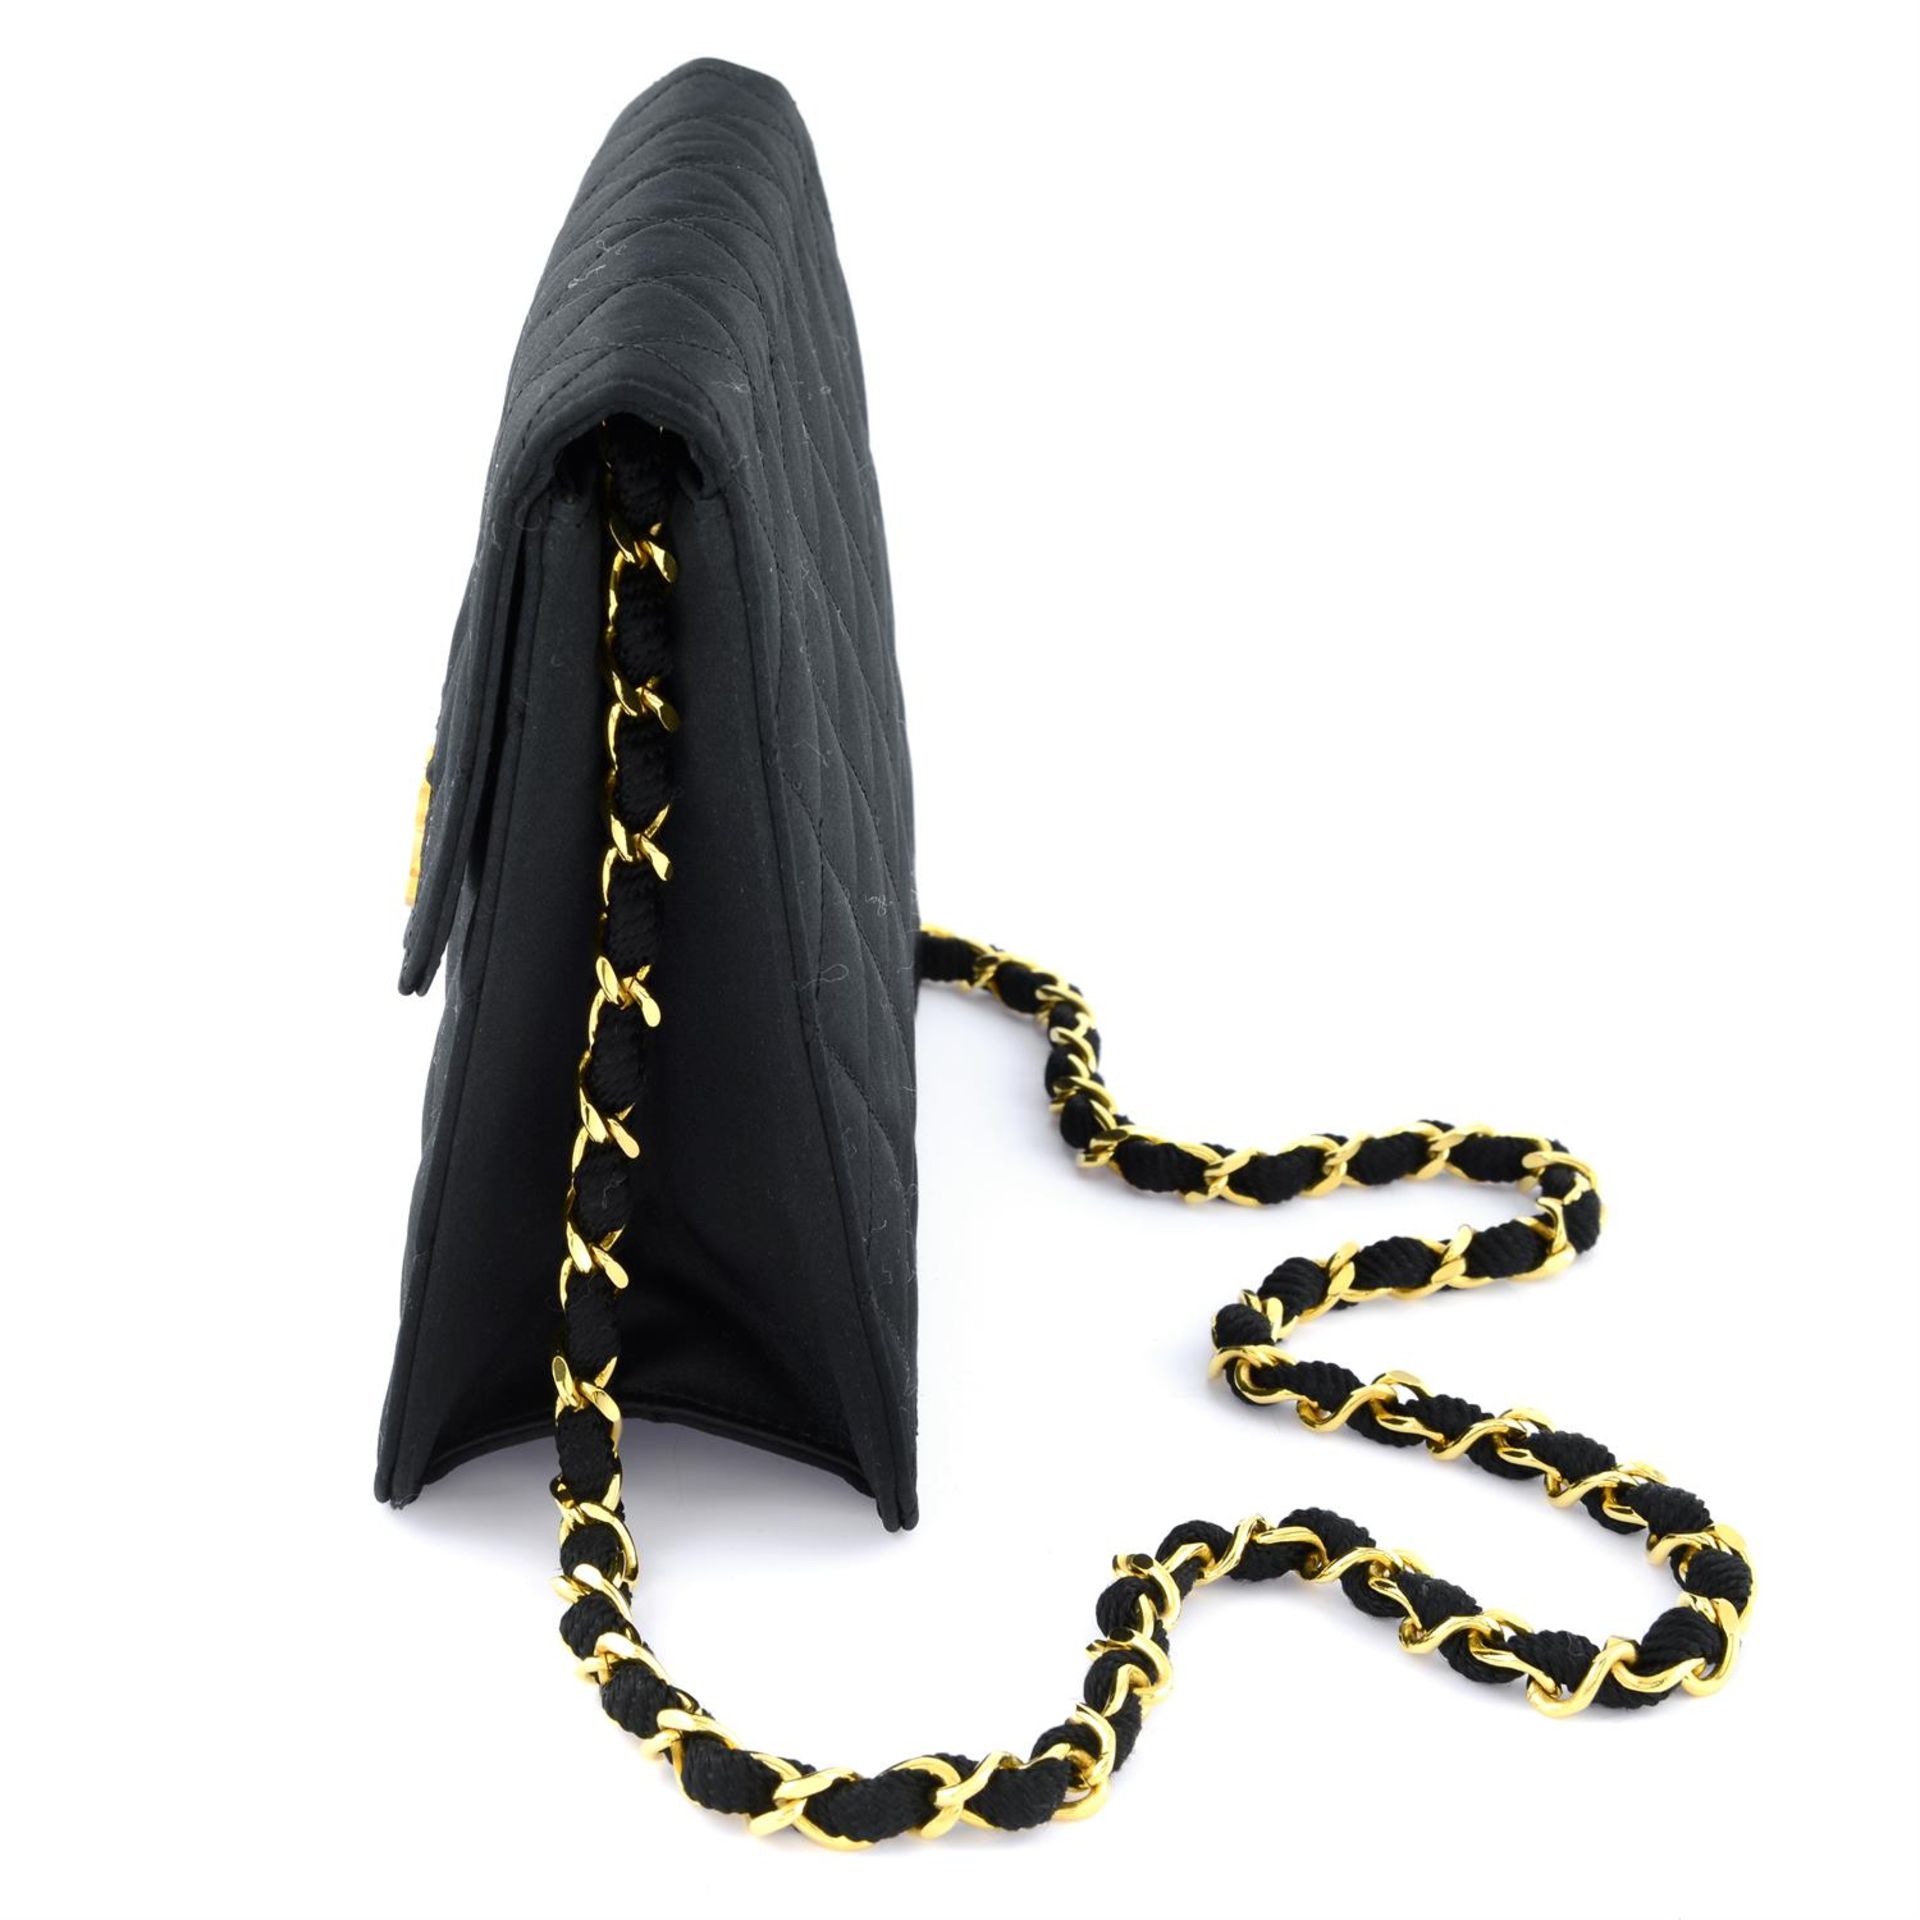 CHANEL - a small black satin handbag. - Image 3 of 4